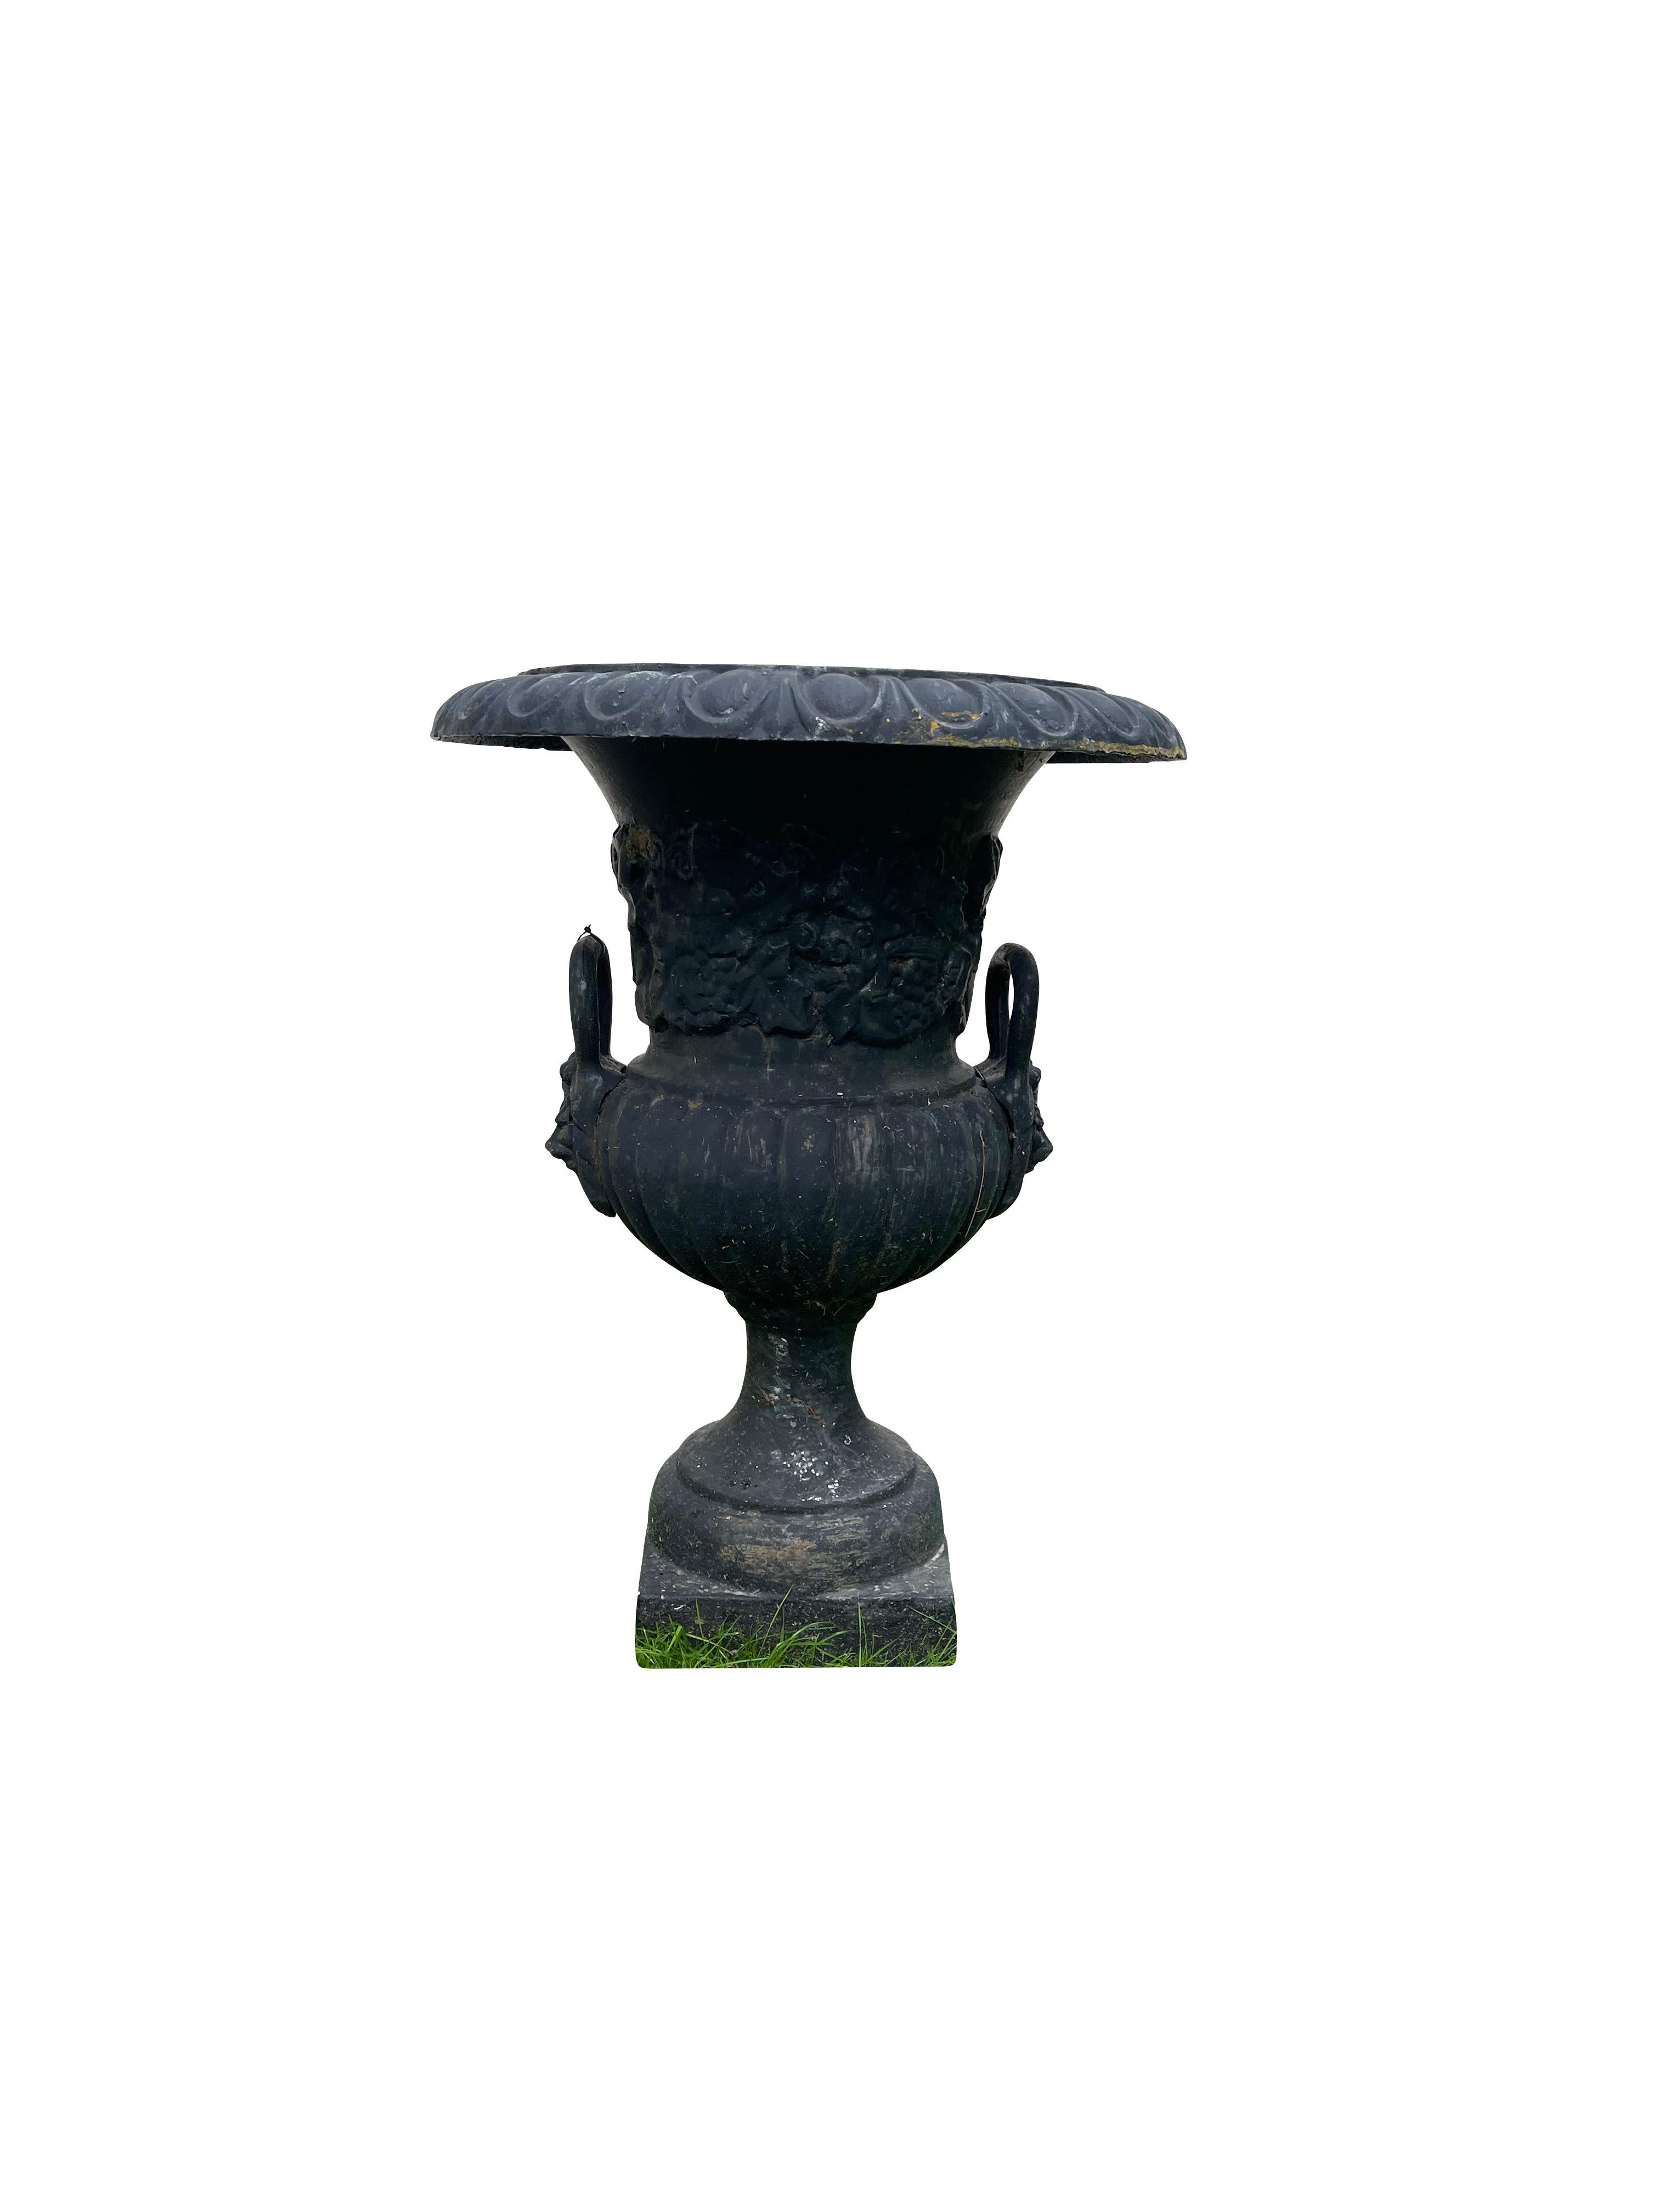 Paire d'urnes de jardin Campana en fonte avec poignée, en noir. Chacune repose sur une base carrée d'un pouce de côté, avec une profondeur de 6 pouces et un diamètre intérieur de 14 pouces, un trou de drainage ; le bord est décoré d'une